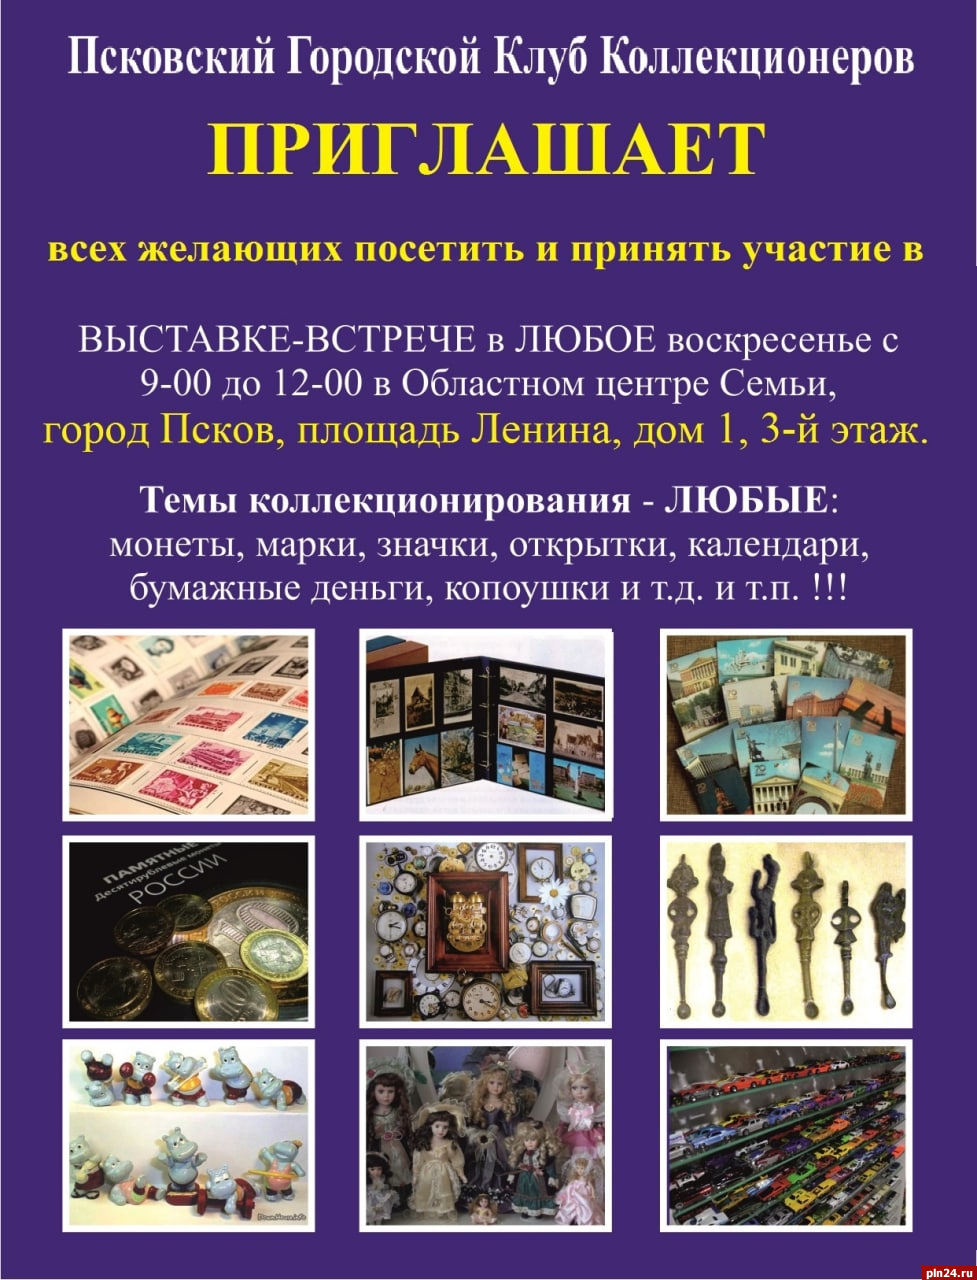 Псковский клуб коллекционеров организует выставку-встречу